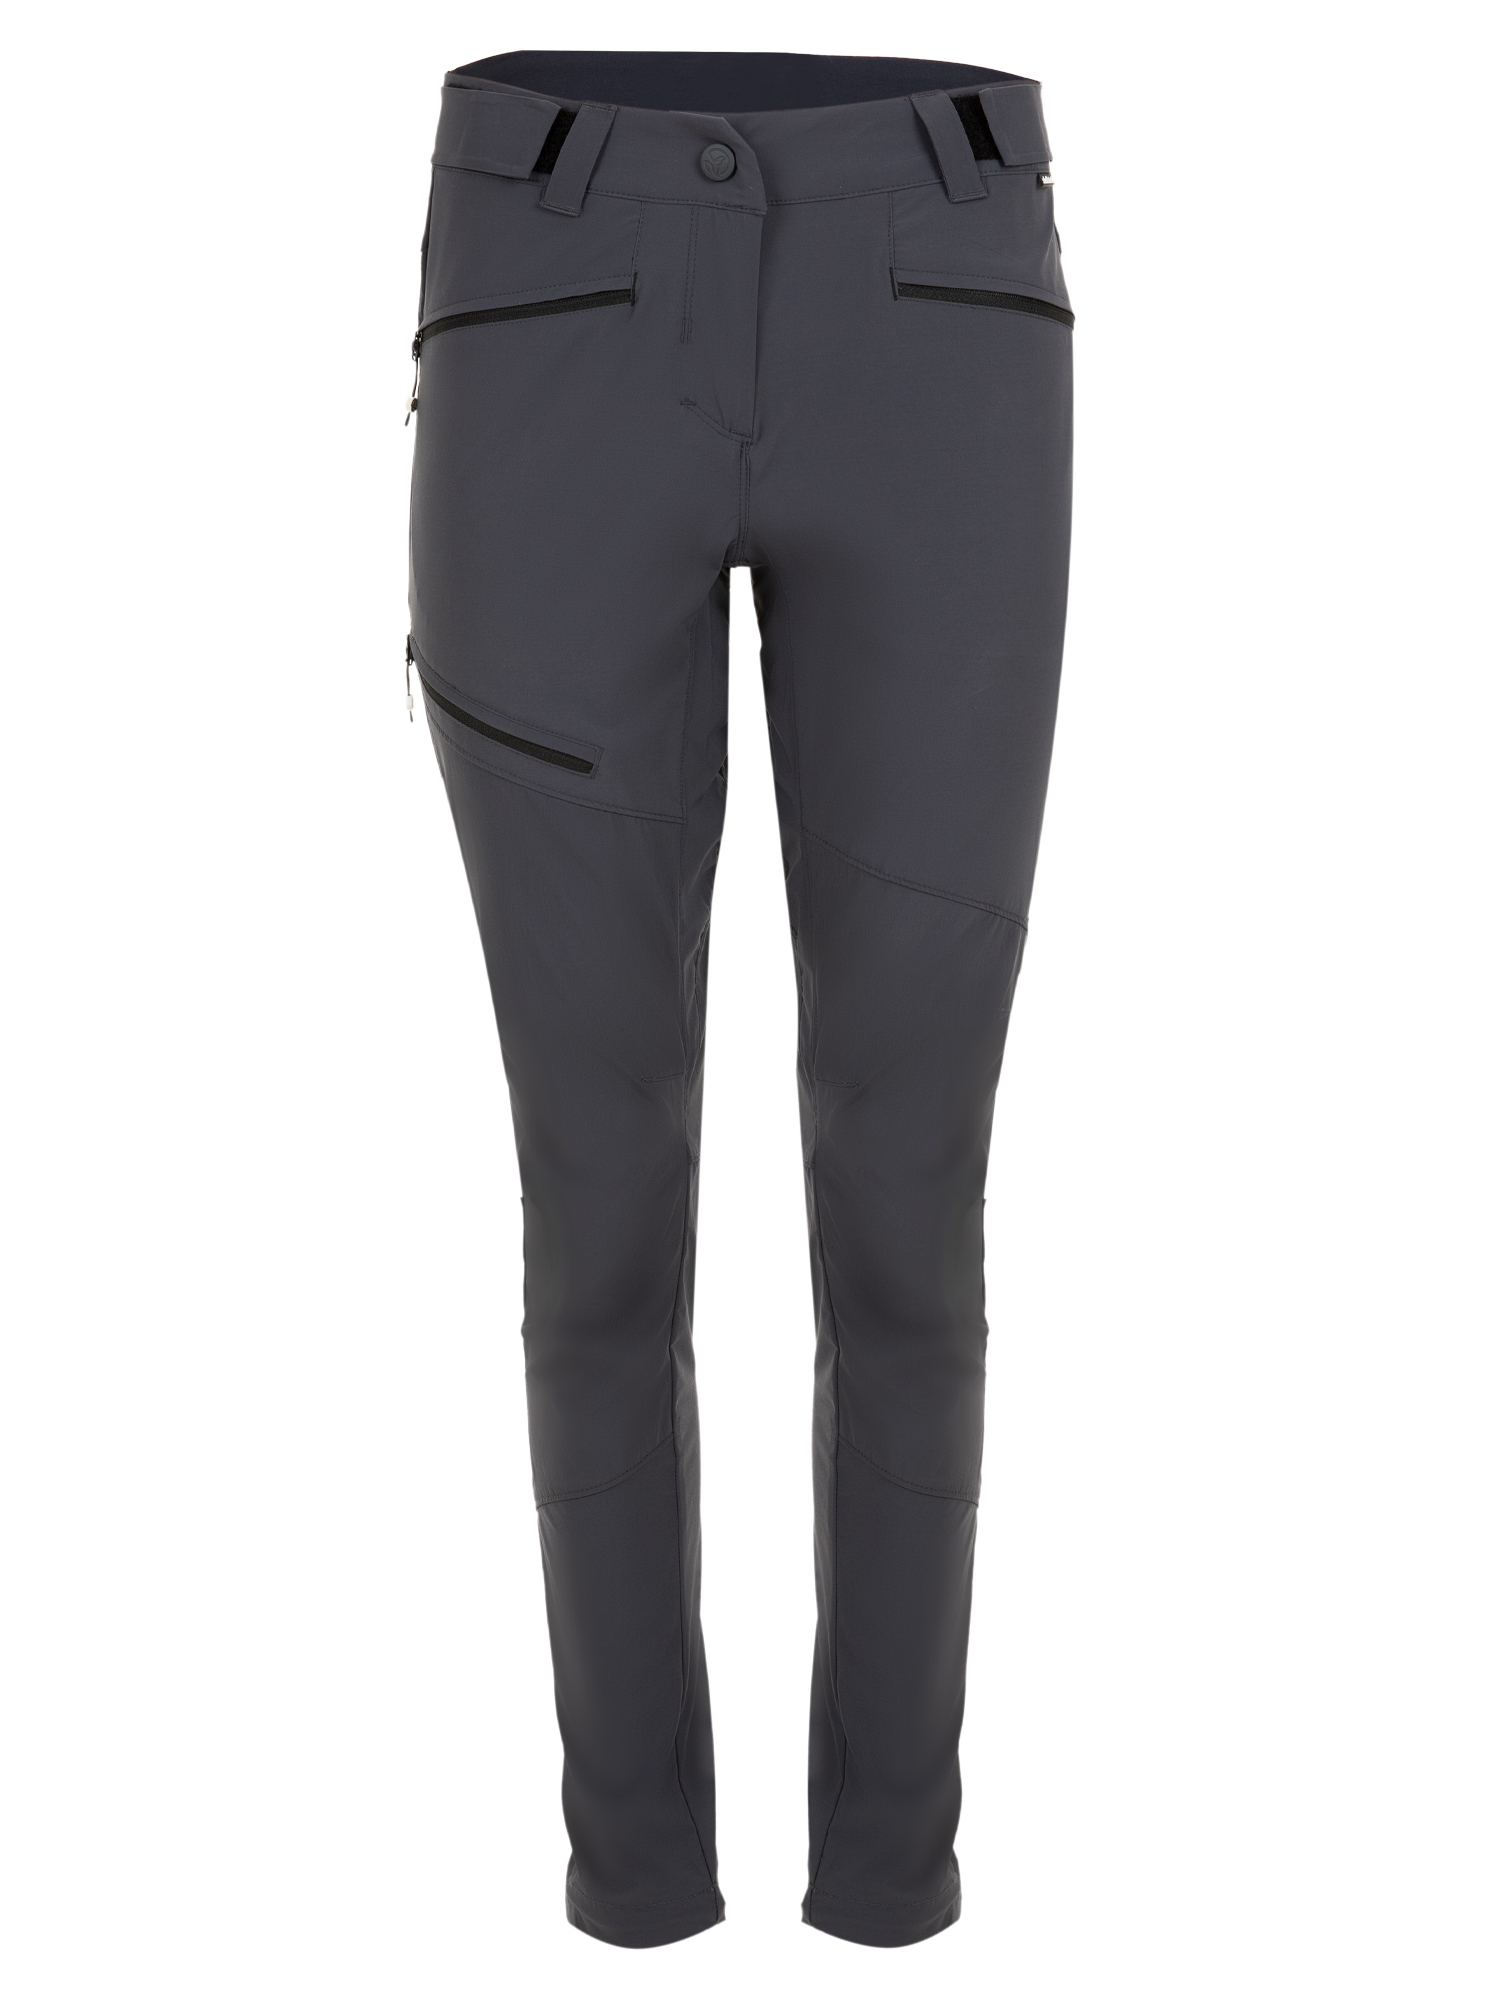 Спортивные брюки женские Ternua Rotar Pt W серые 2XL